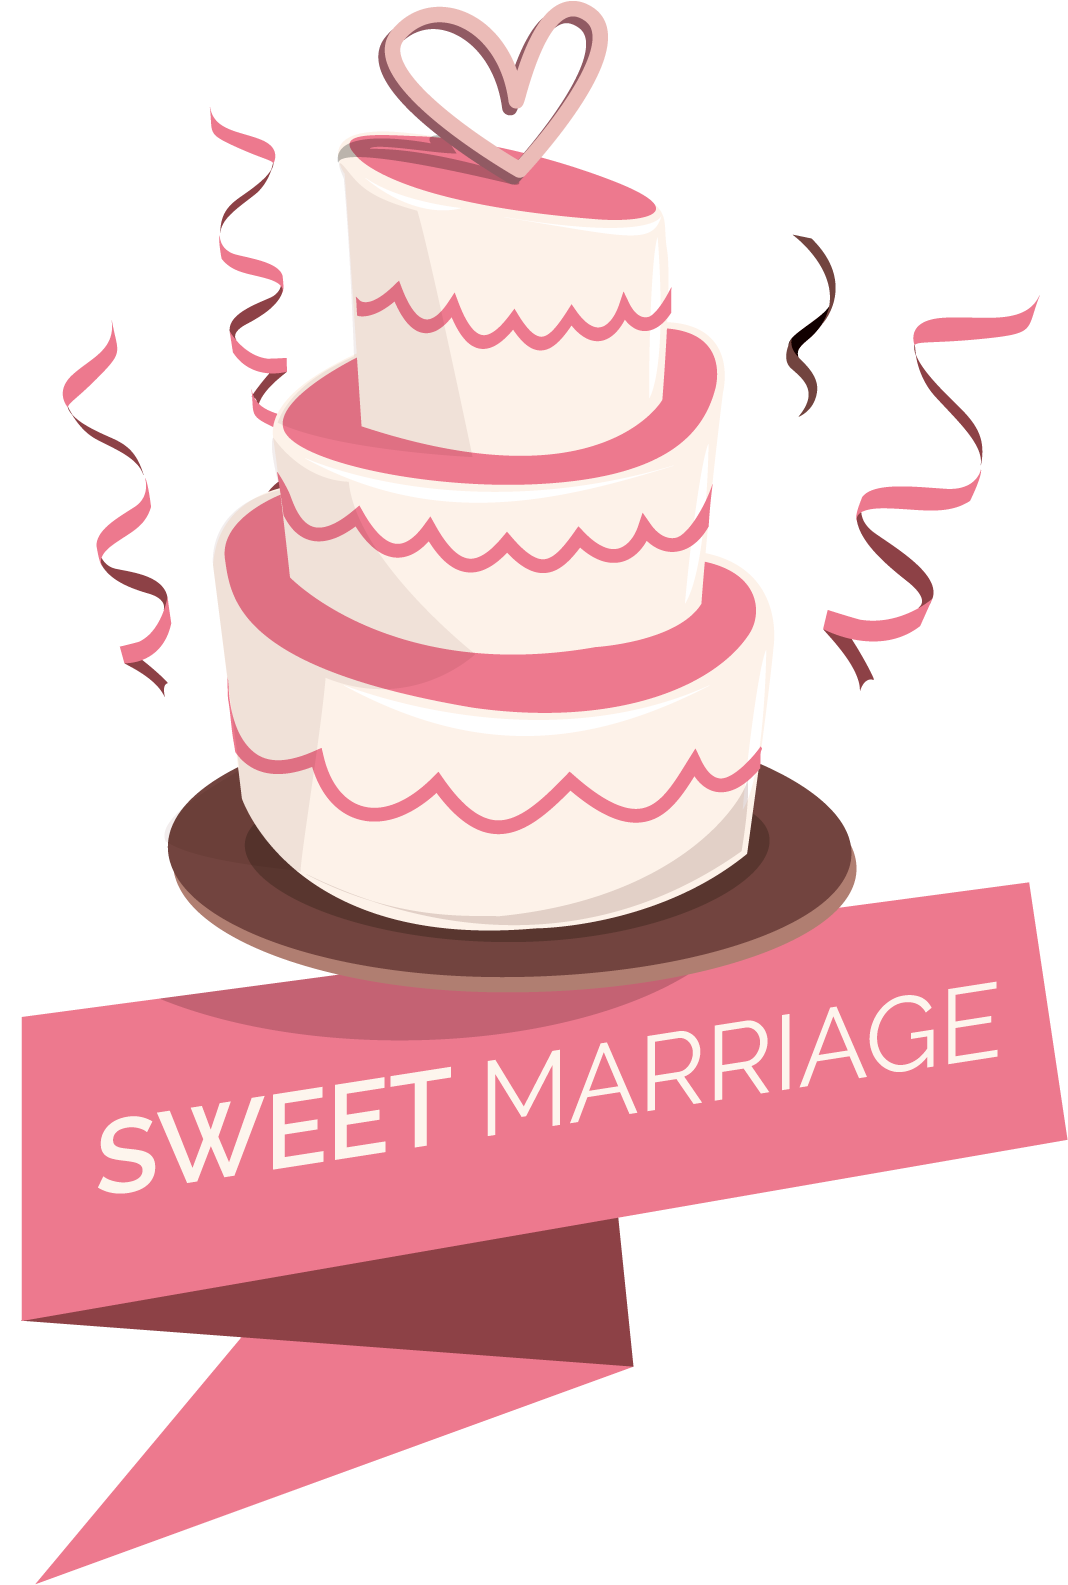 Sweet Marriage Cake Logo PNG